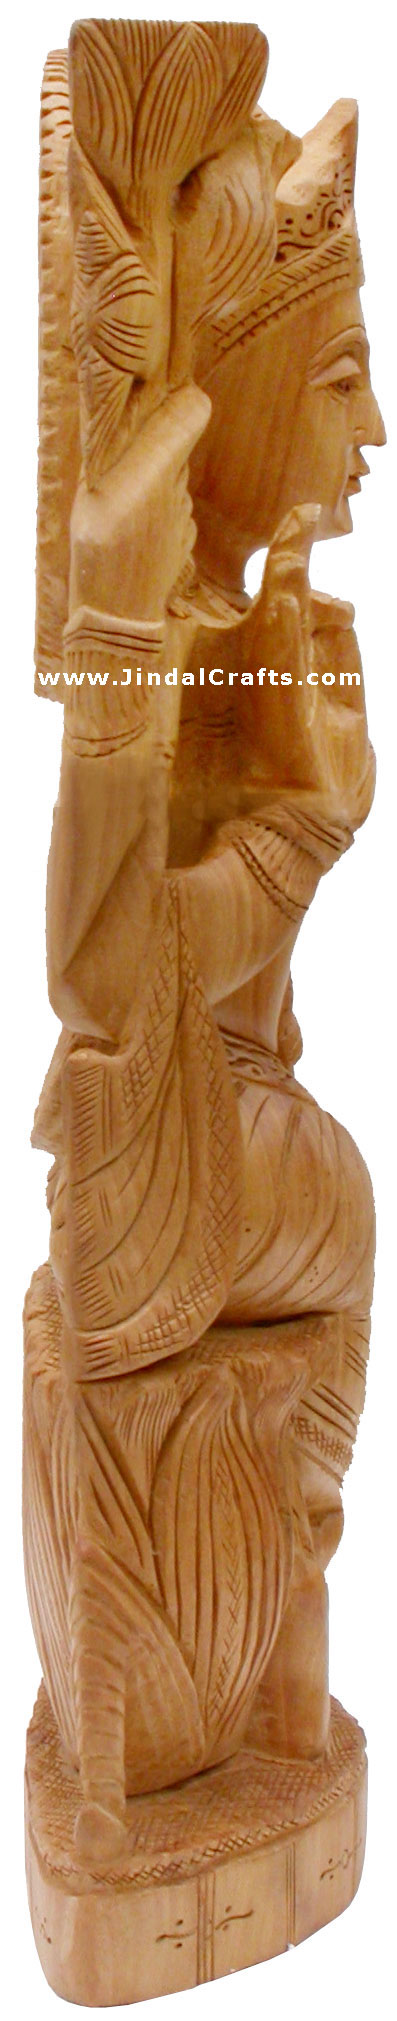 Handcrafted Wooden Goddess Lakshmi Hindu Sculpture Art